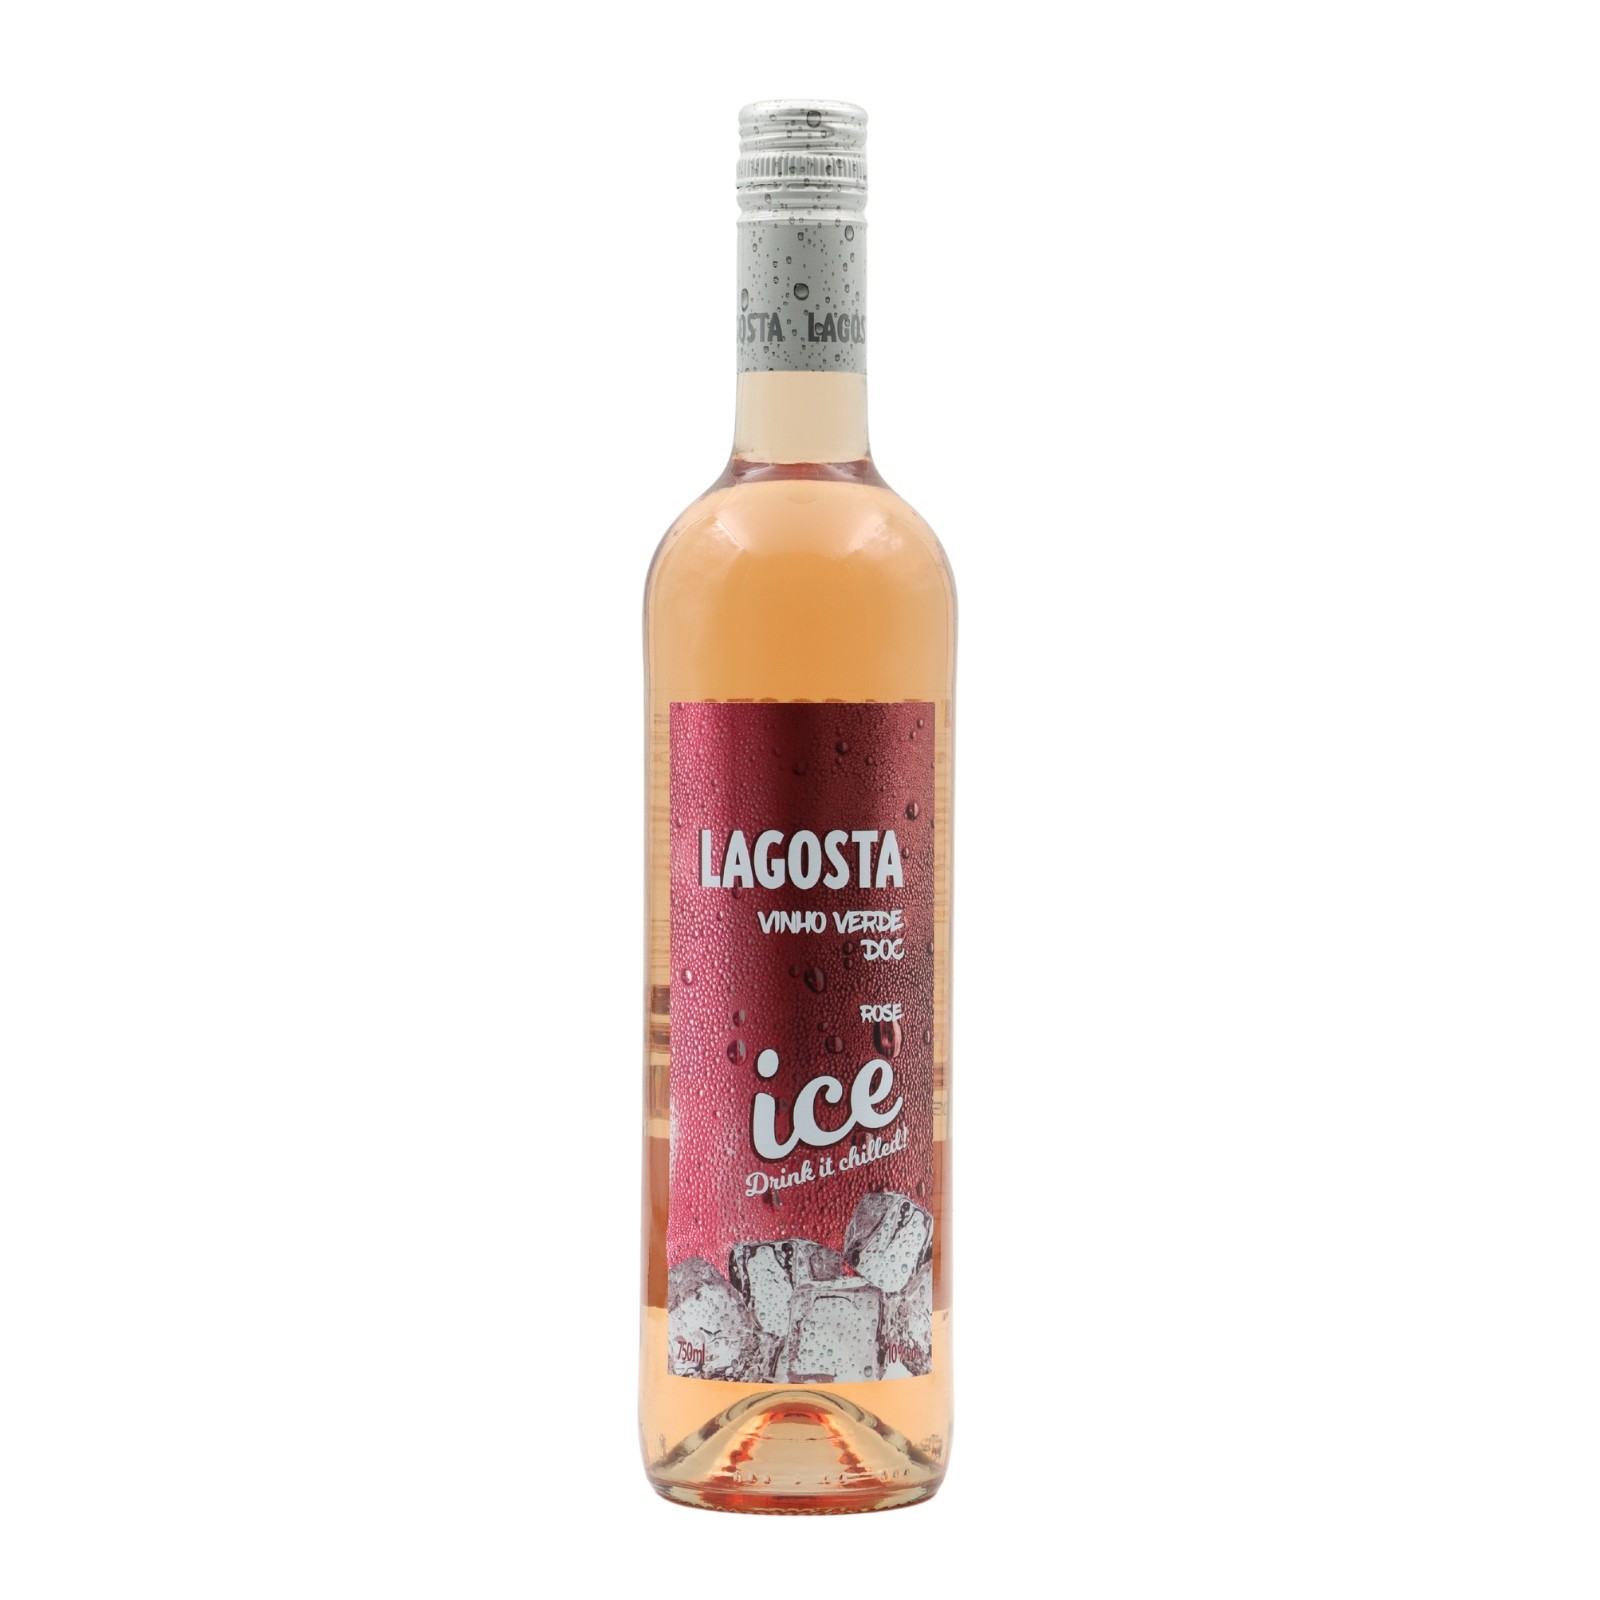 Lagosta Ice Rosato